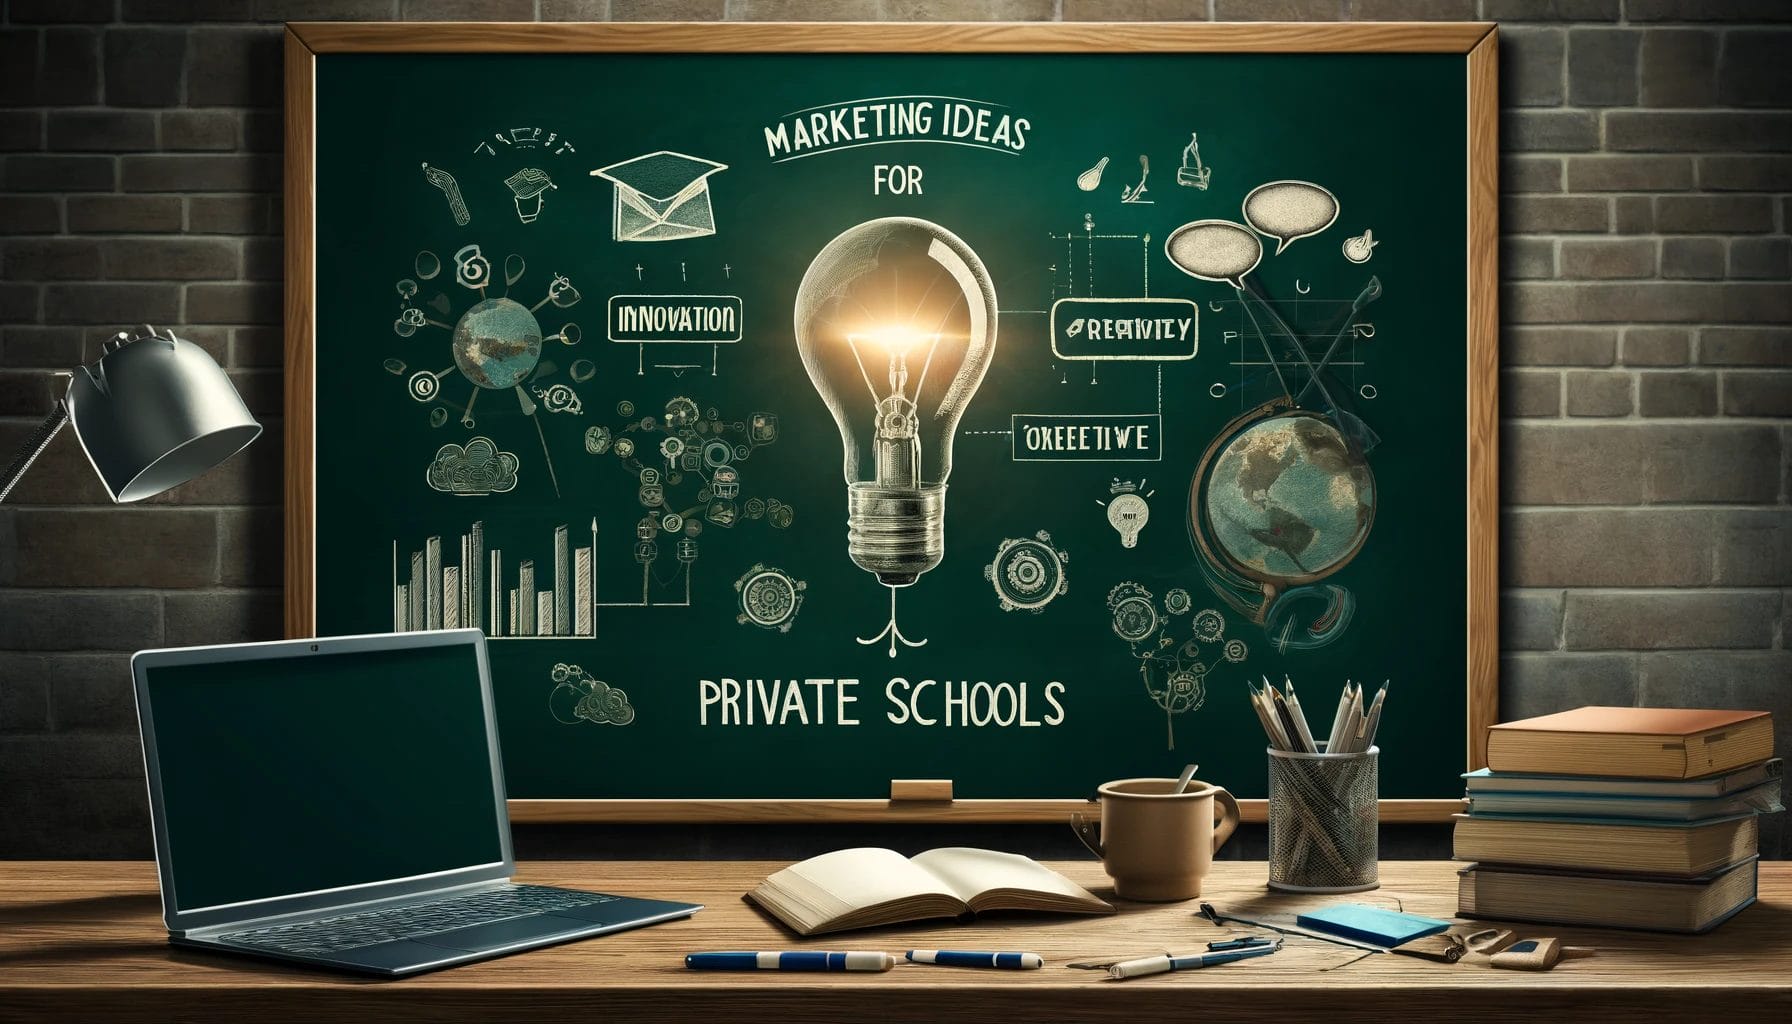 Marketing Ideas for private schools